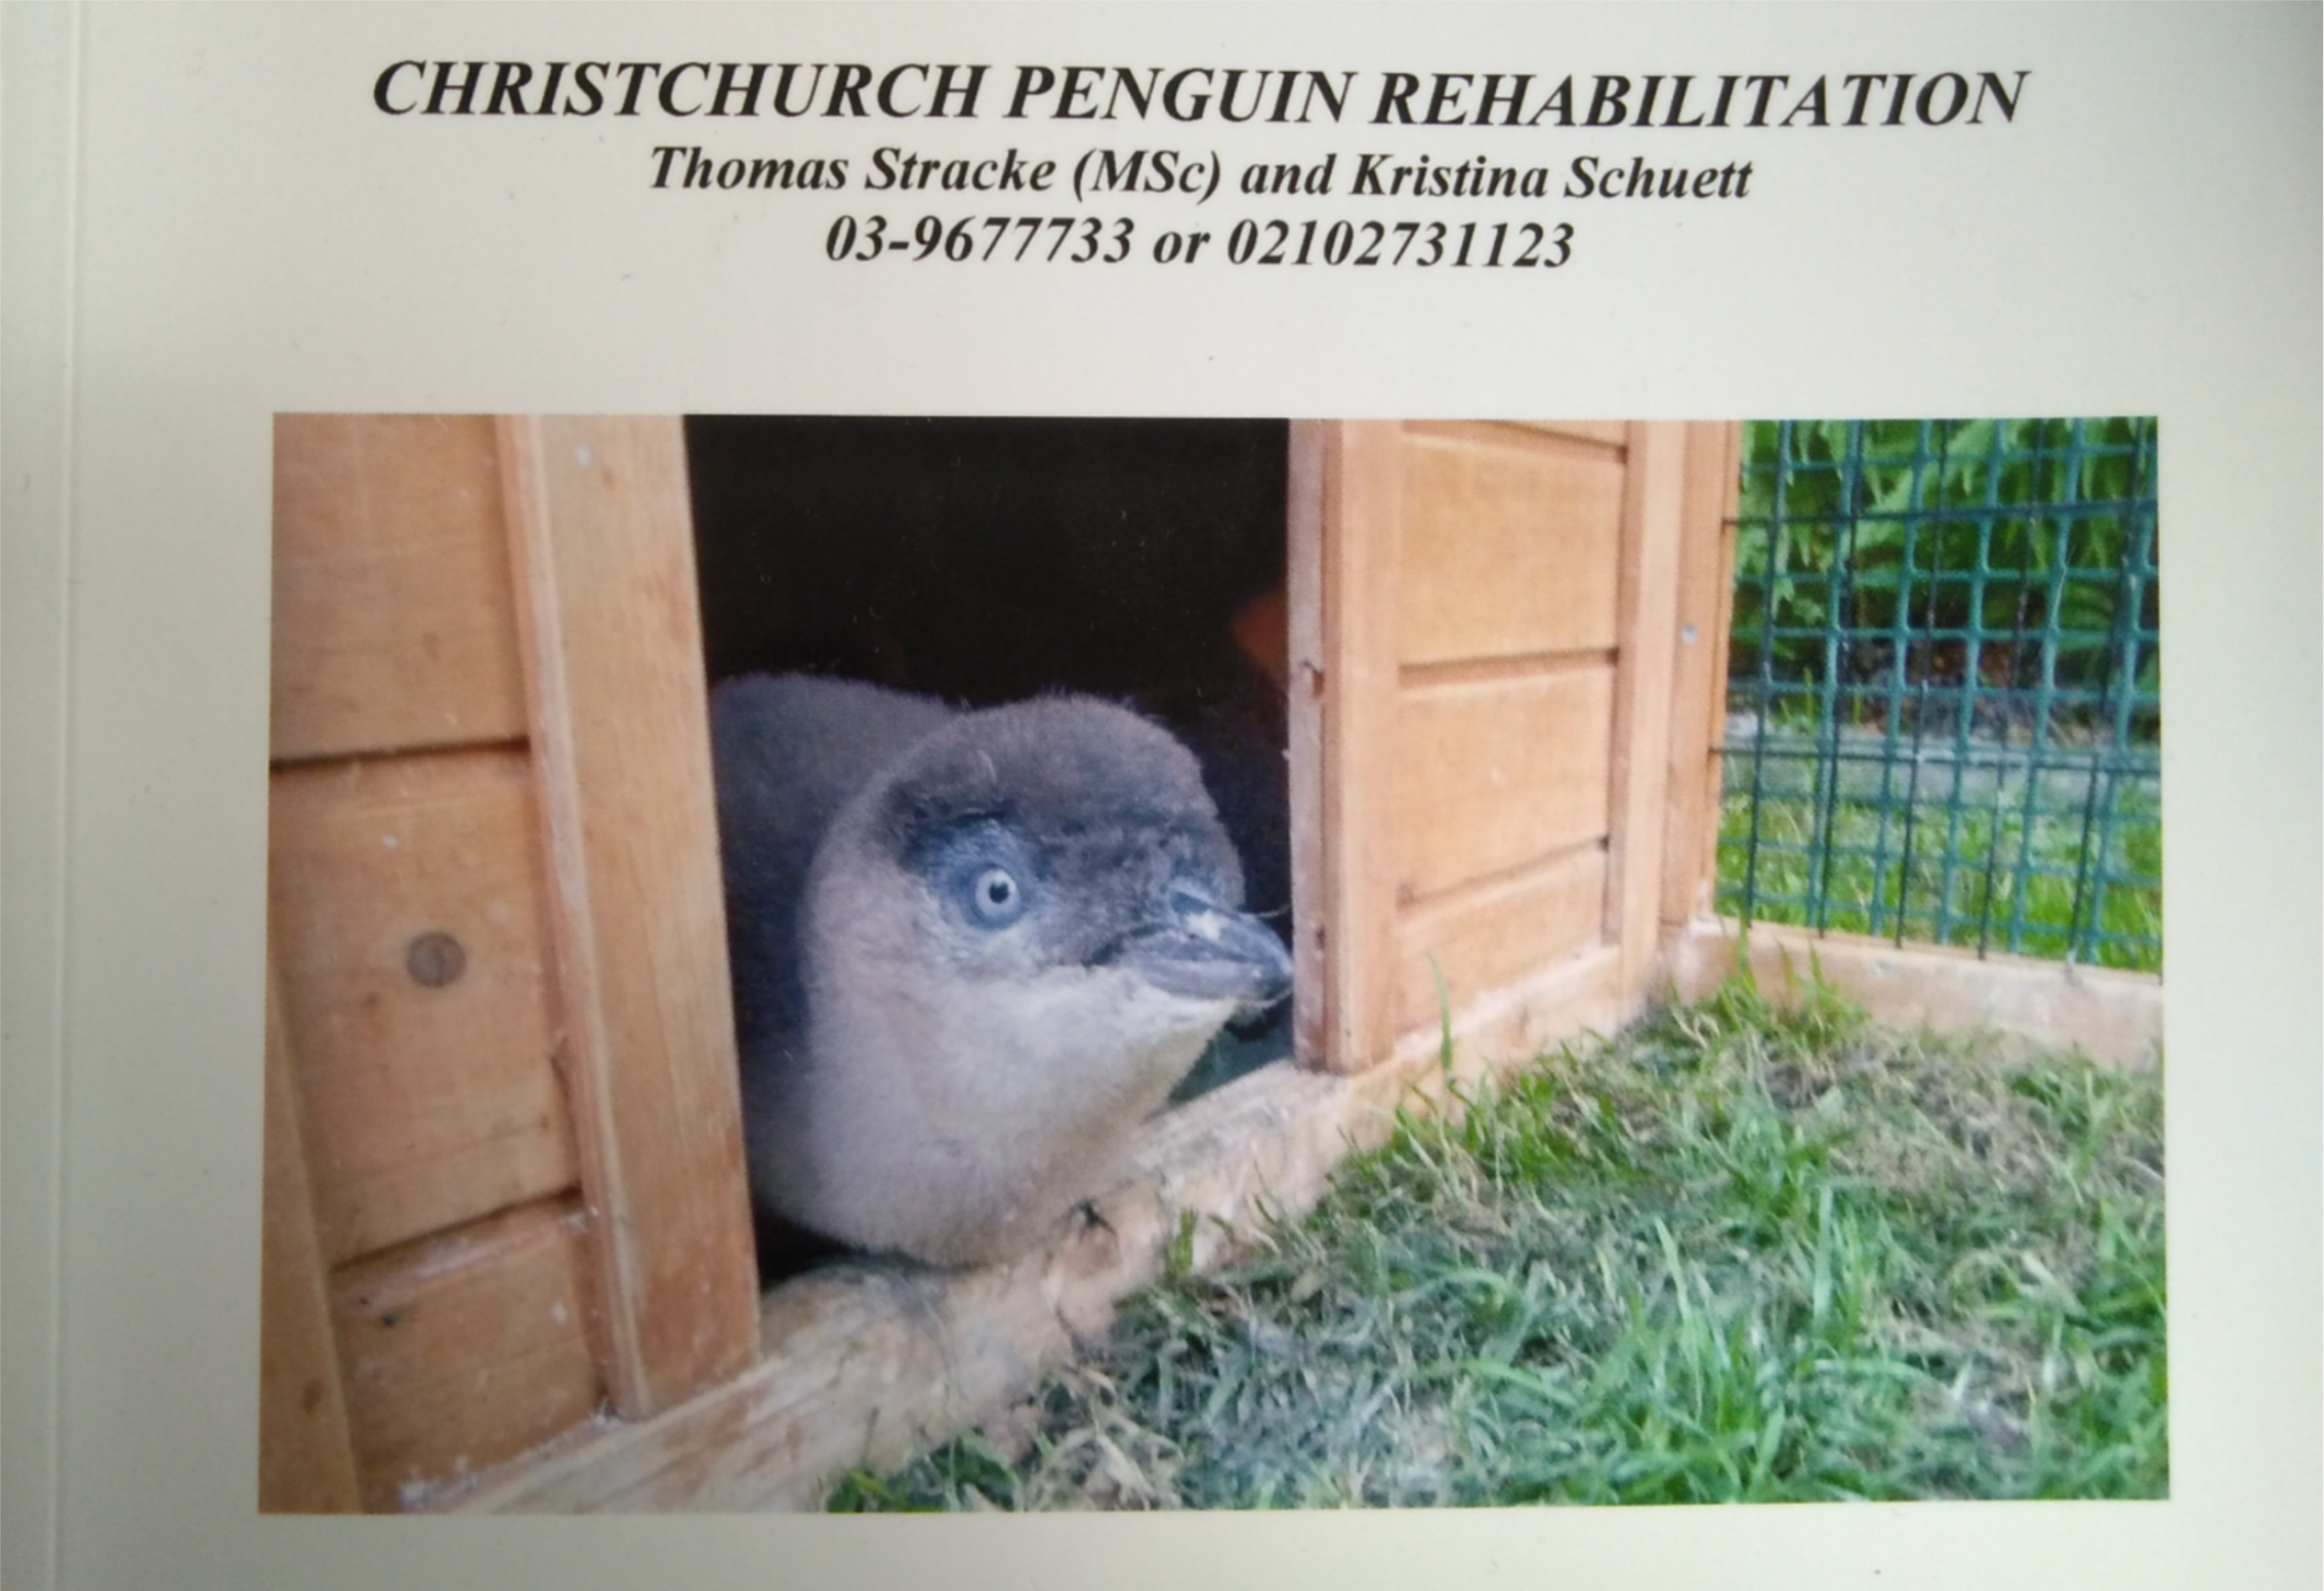 Christchurch penguins rehabilitation